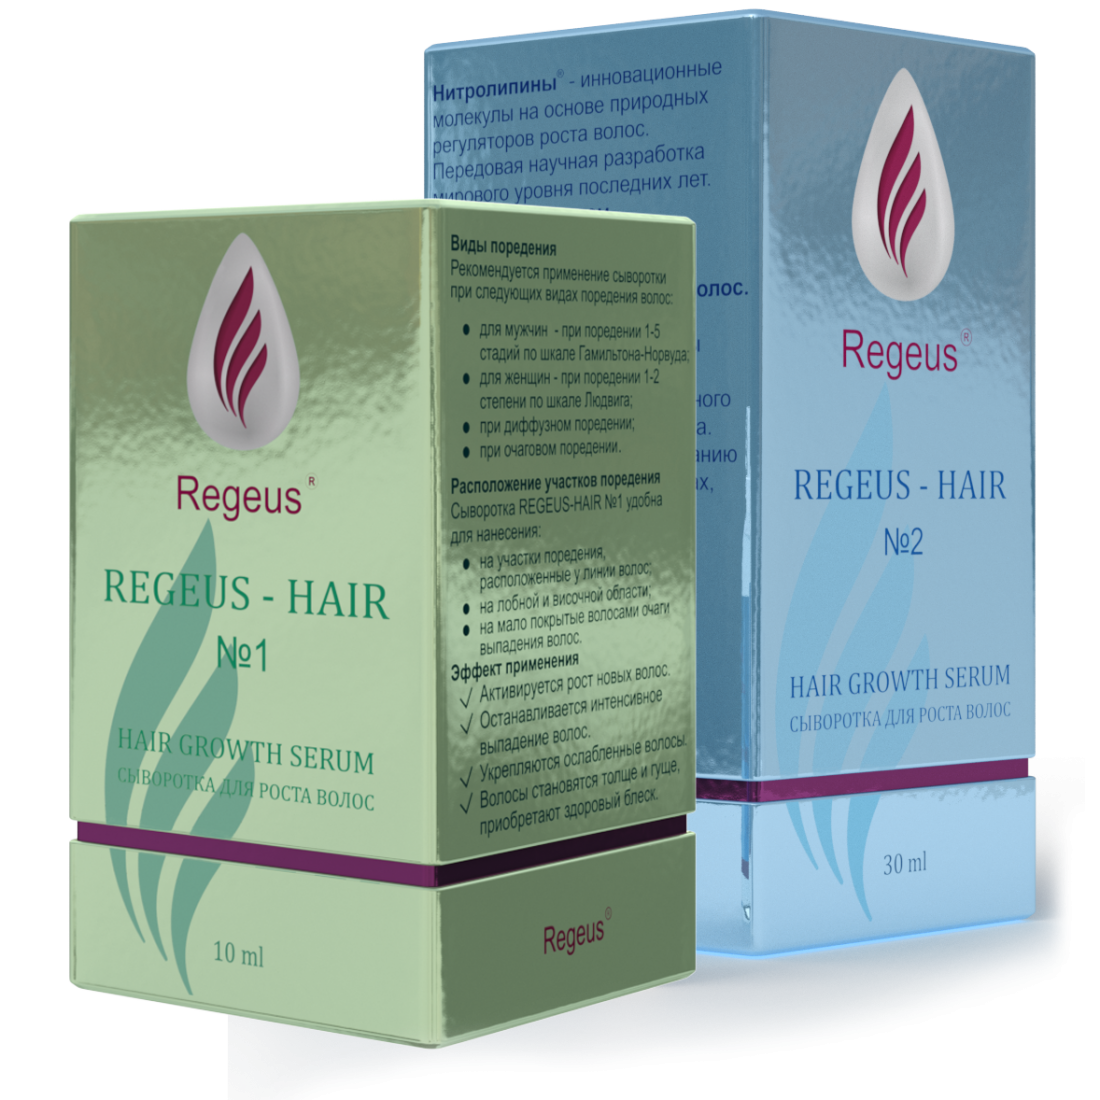 Сыворотка для роста волос Regeus на основе нитролипинов